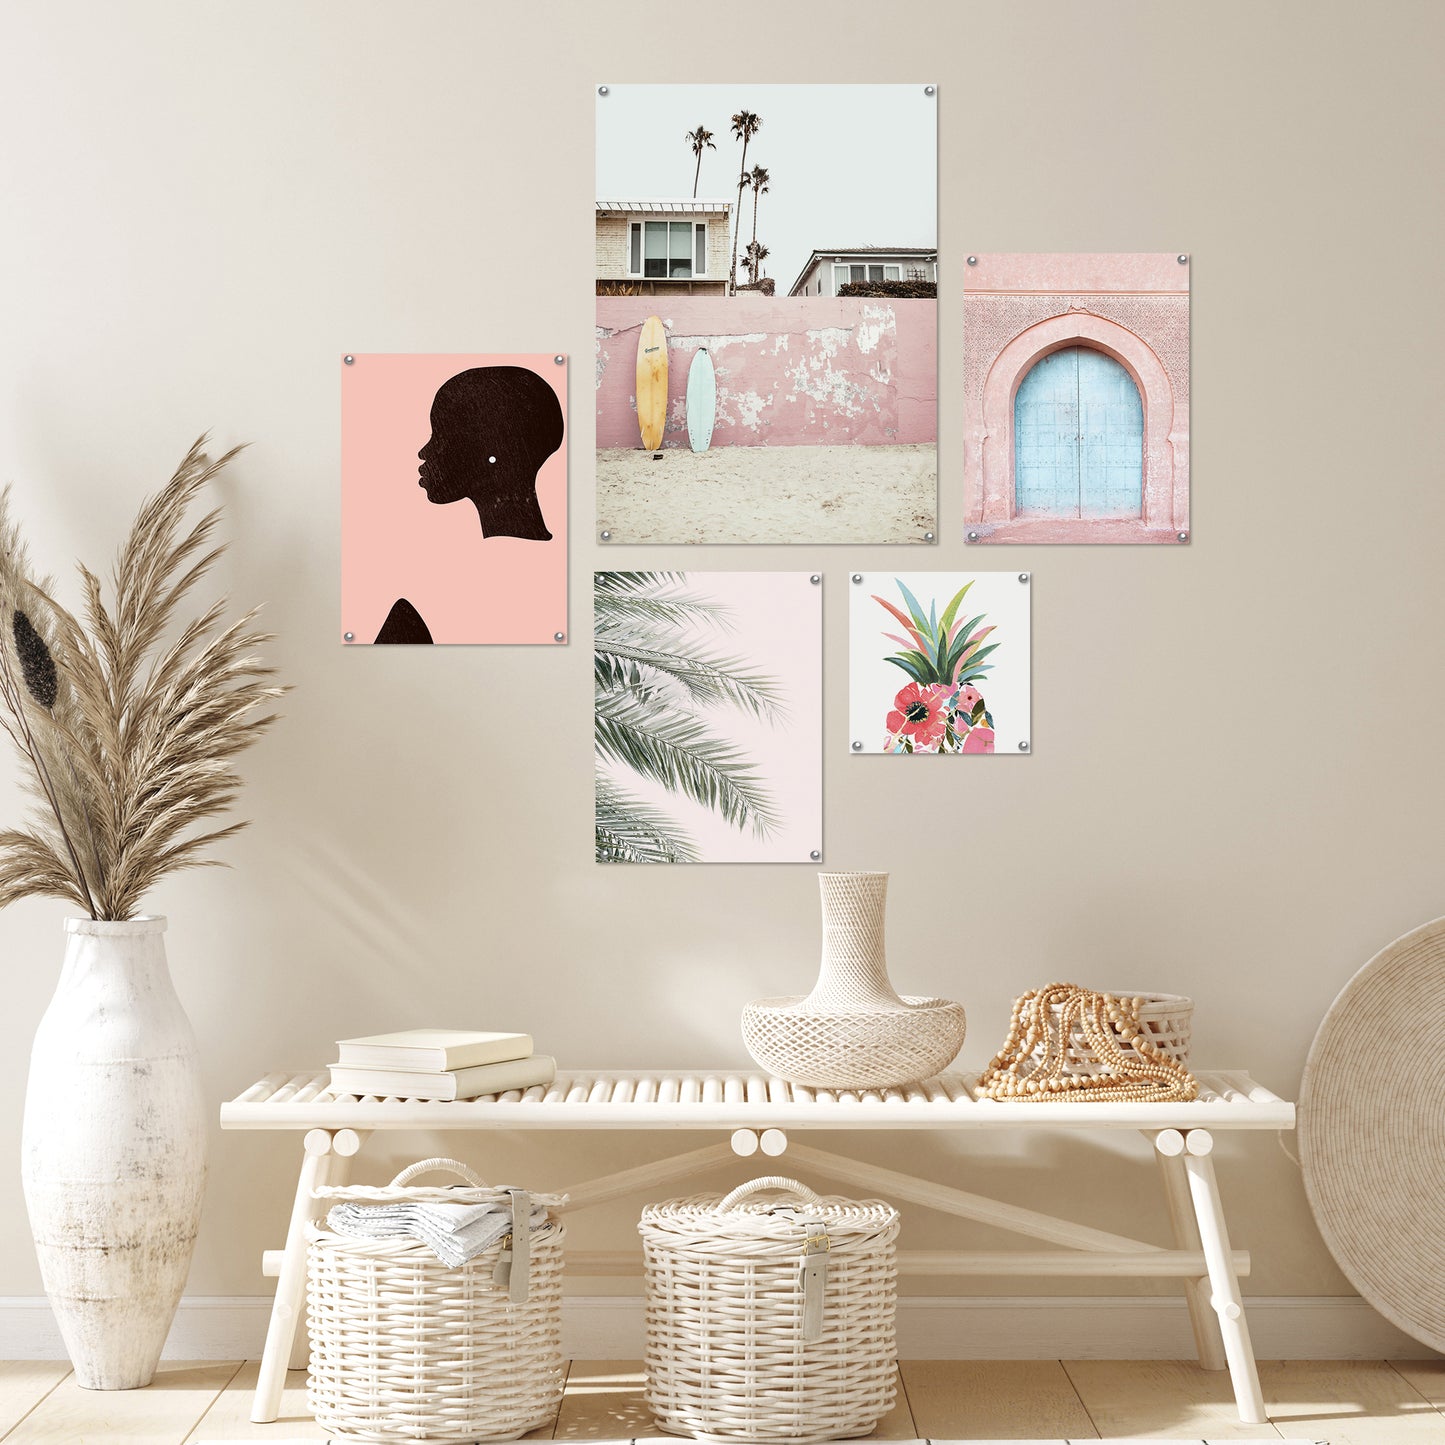 5 Piece Poster Gallery Wall Art Set - Pink Botanical Beach Woman - Print